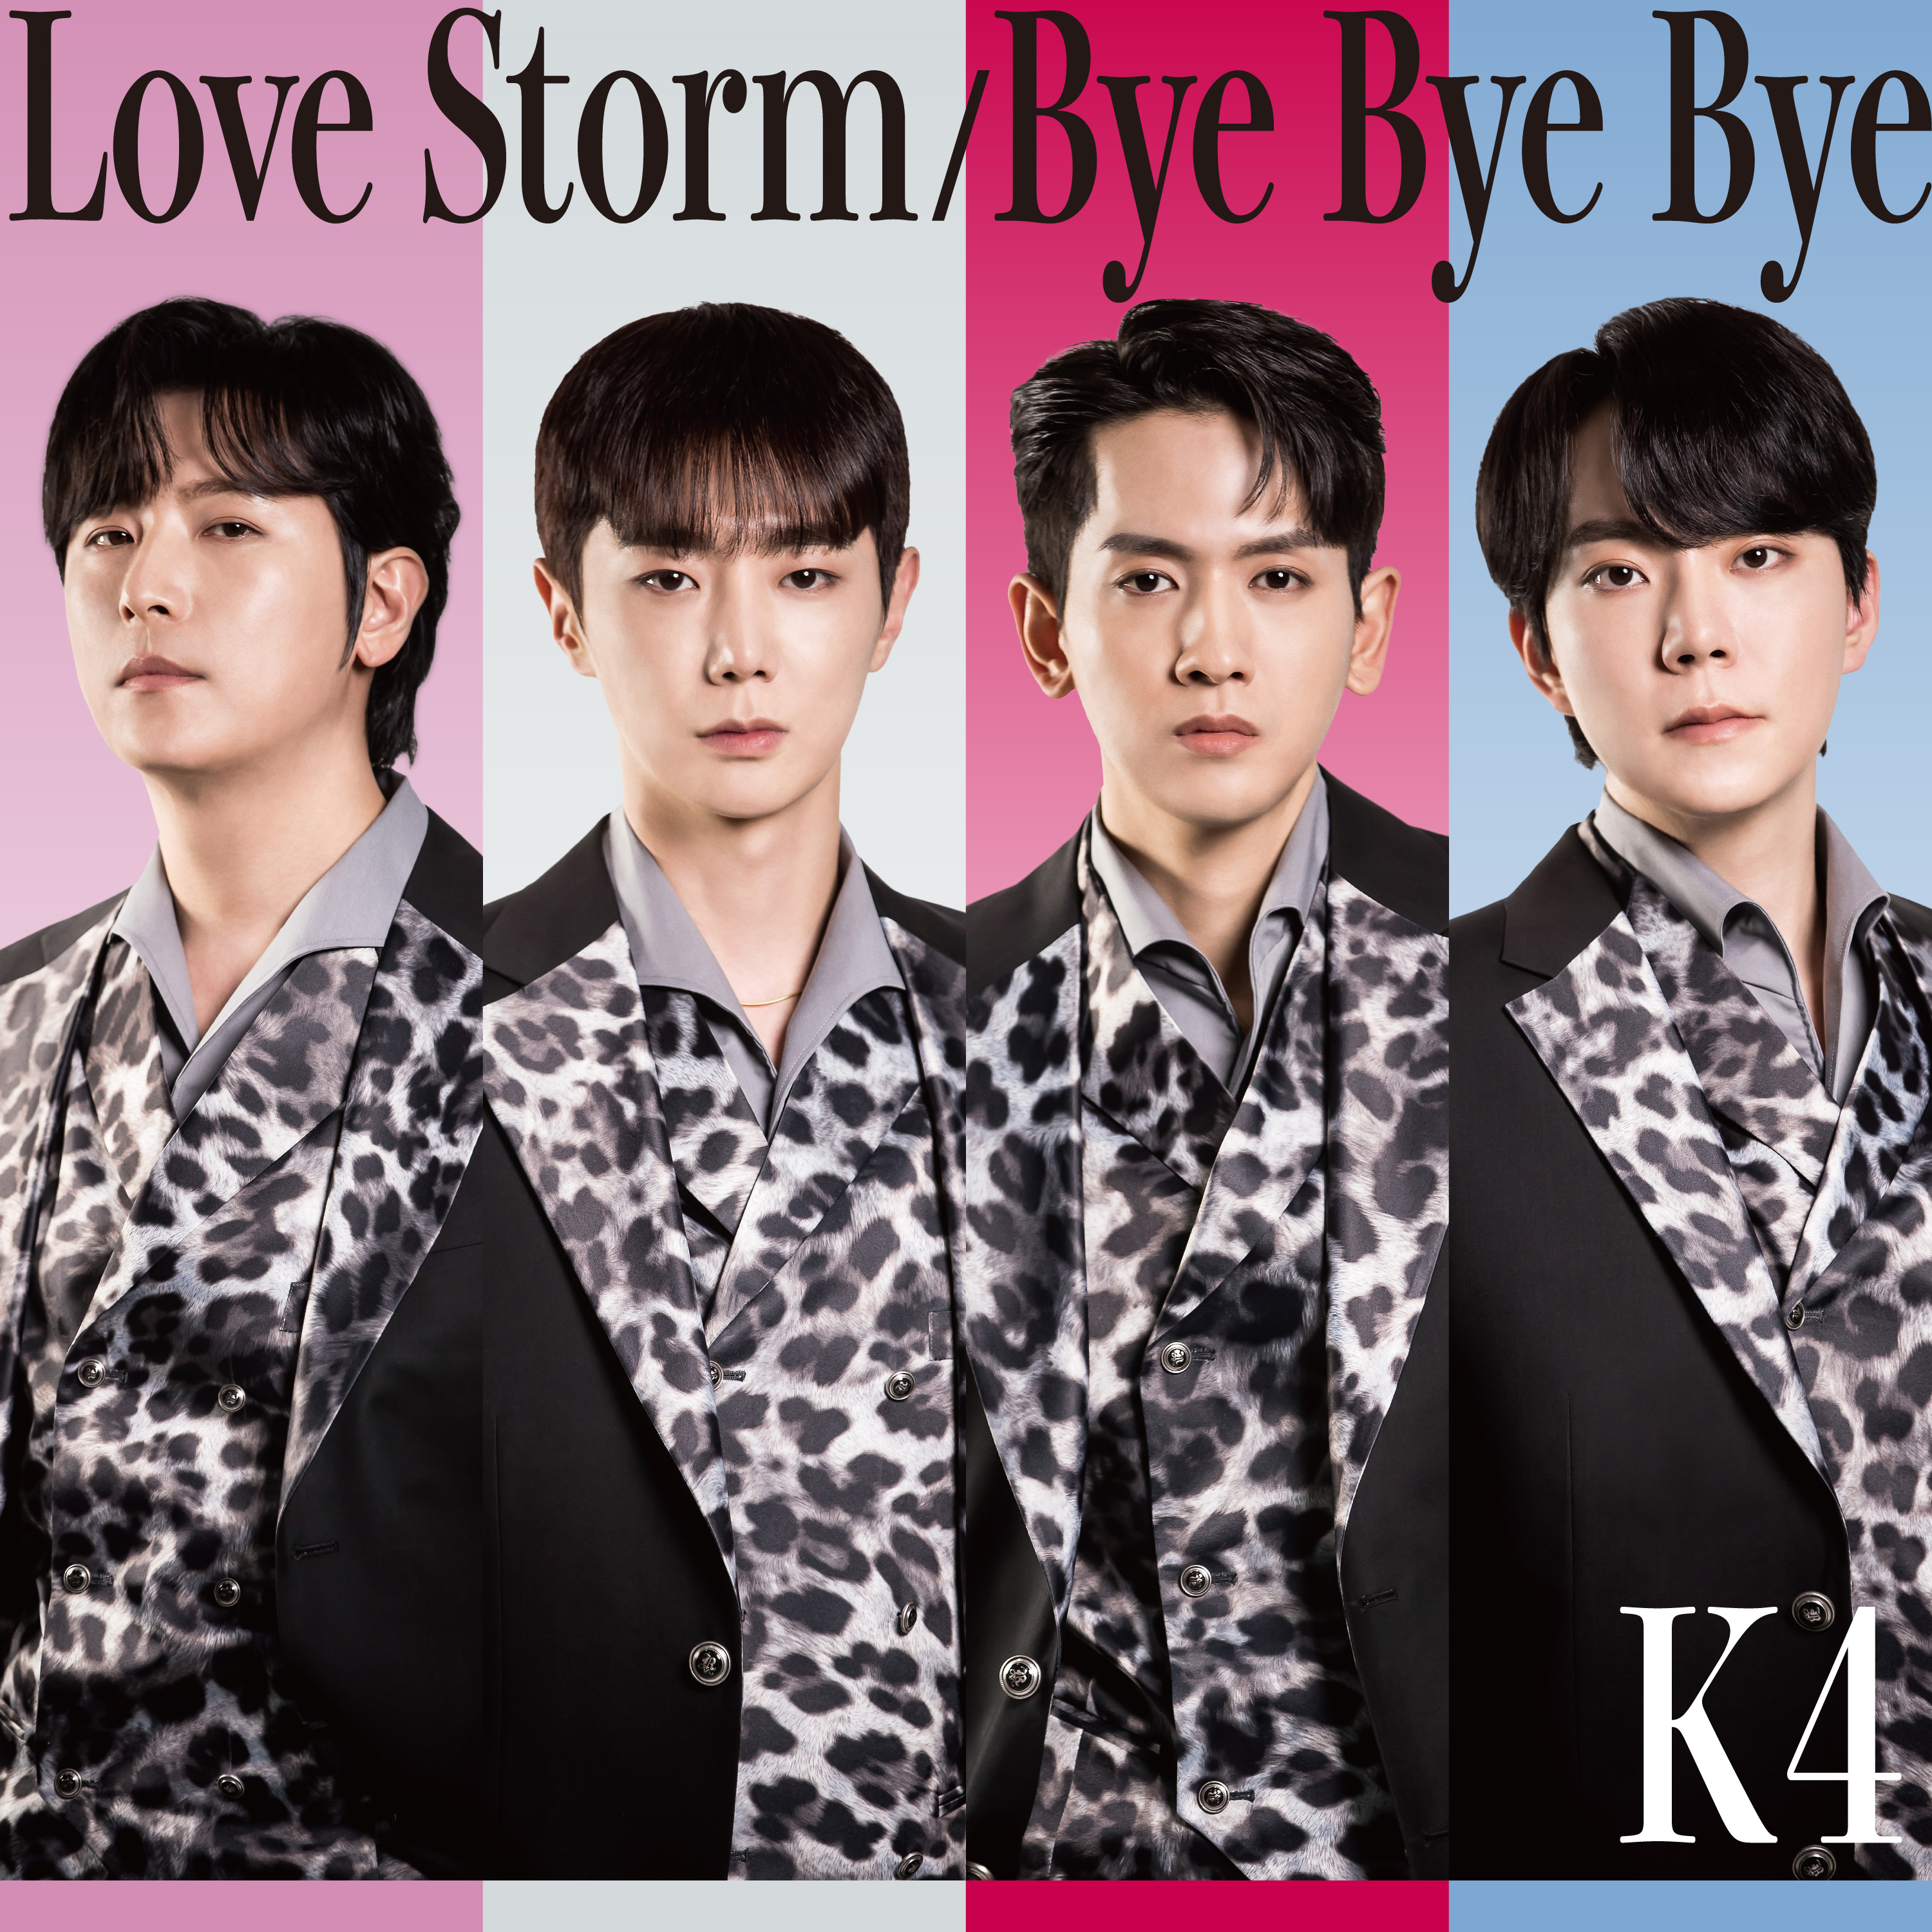 2作連続快挙達成!!!!ADULT K-POPグループK4日本デビューシングル「Love Storm -Japanese version-」のサブ画像7_K4日本デビューシングル「Love Storm  Bye Bye Bye」